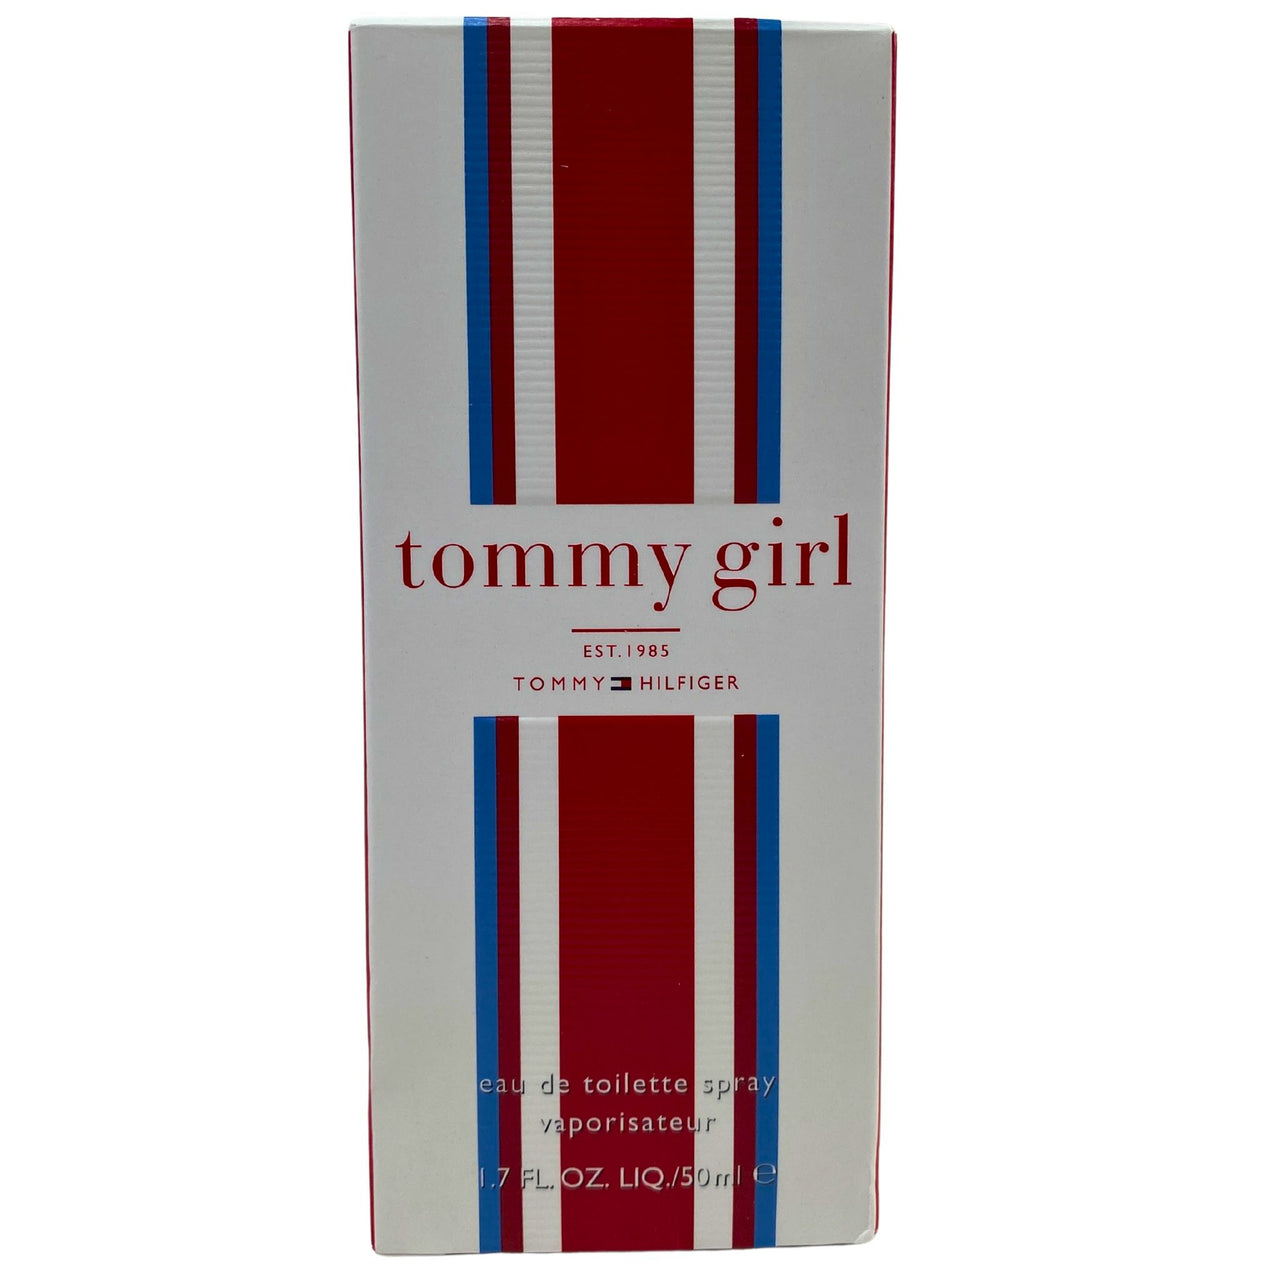 Tommy Girl EST.1985 Tommy Hilfiger Eau De Toilette Spray